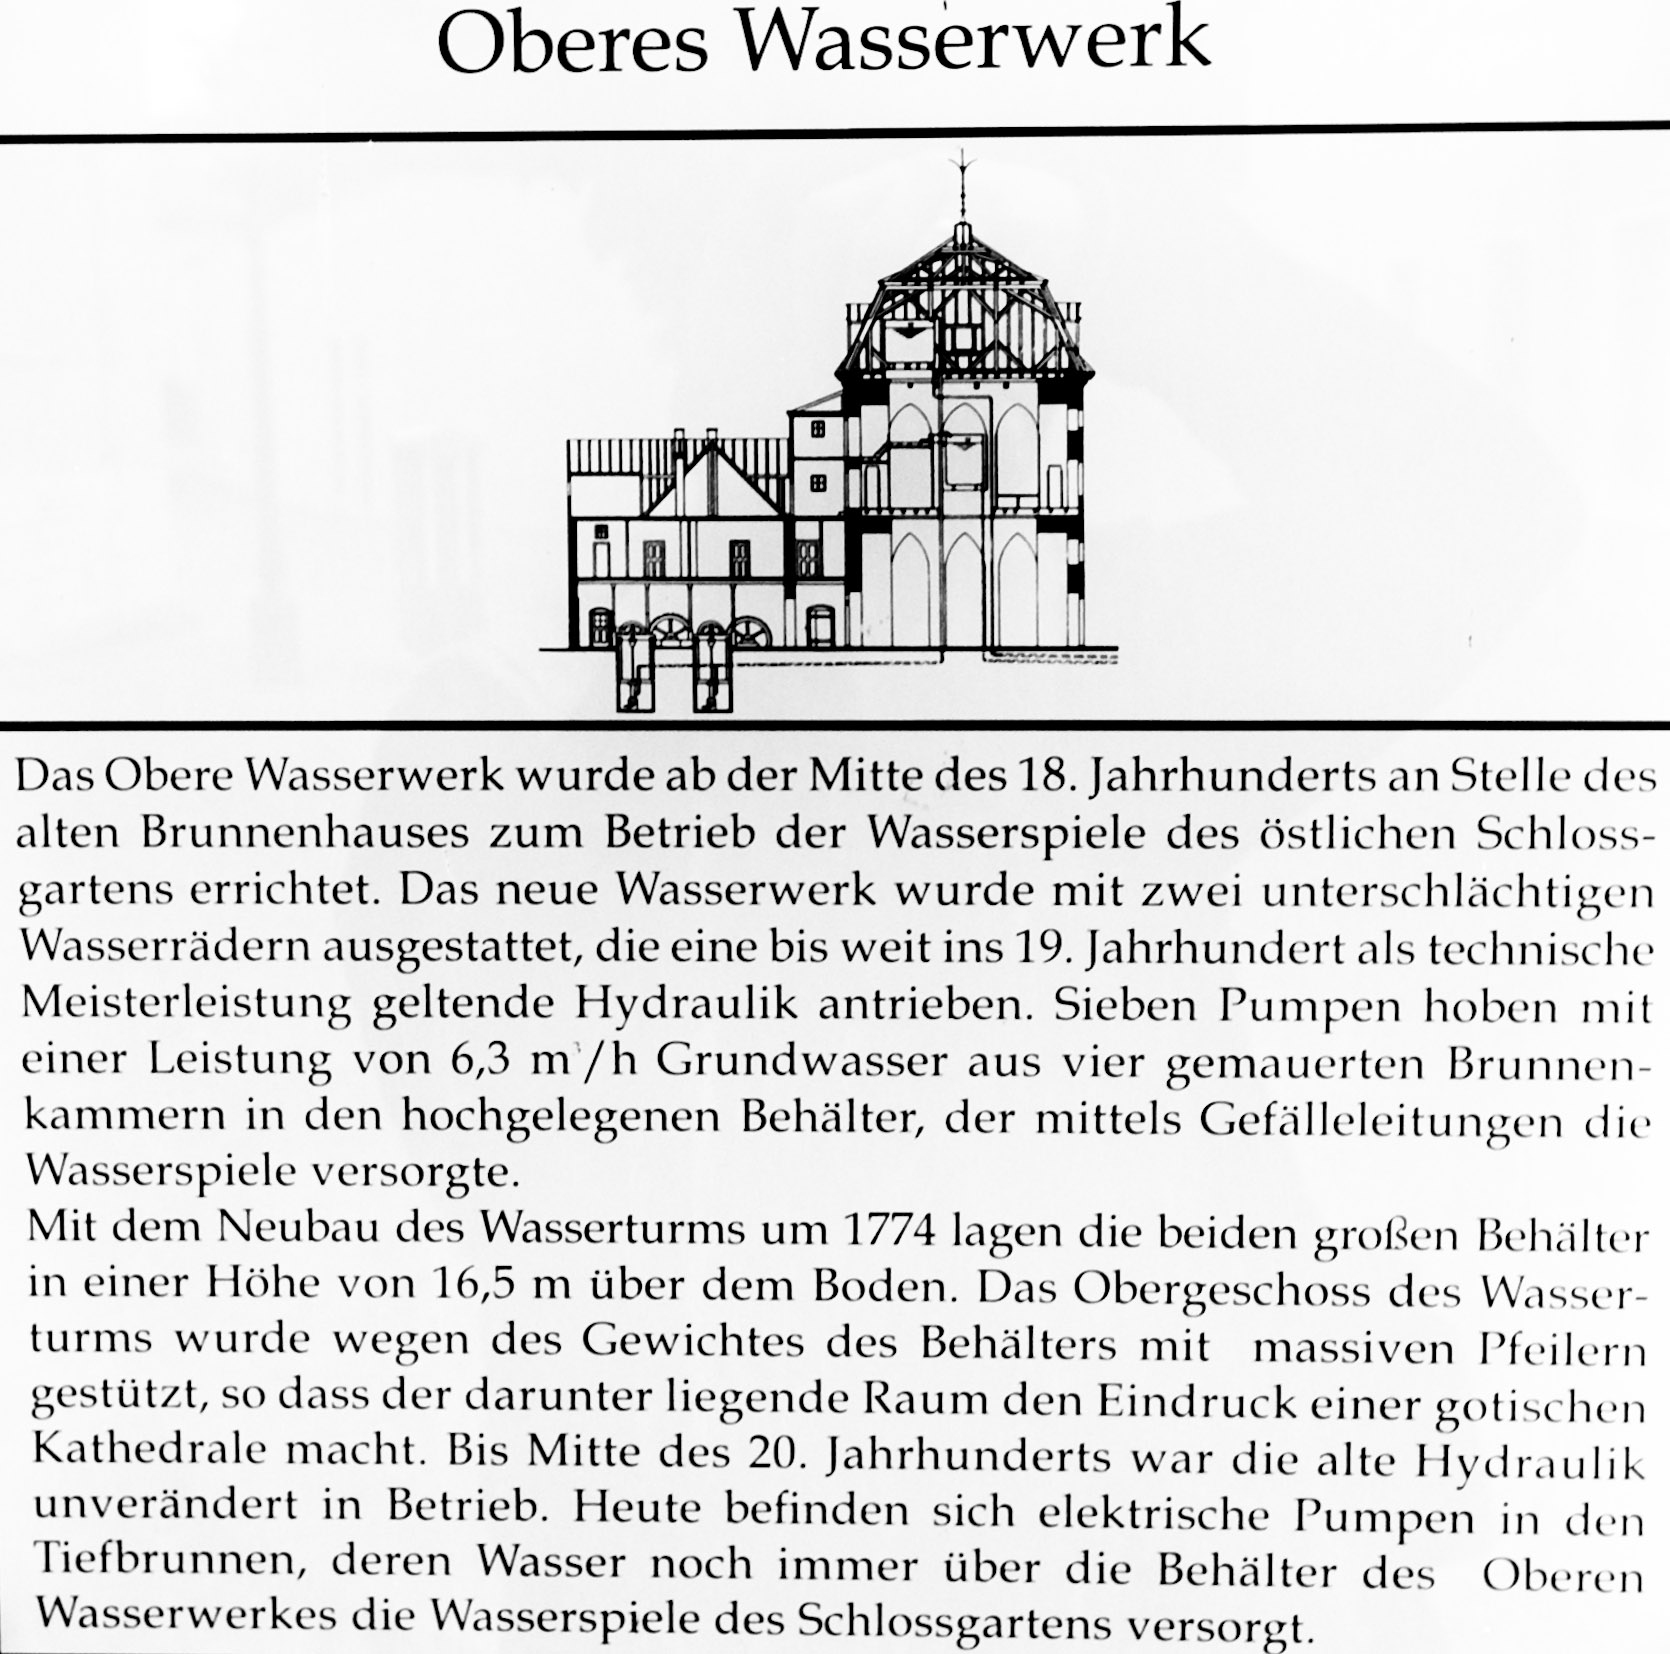 Datei:Infotafel Oberes Wasserwerk Schwetzingen.jpg